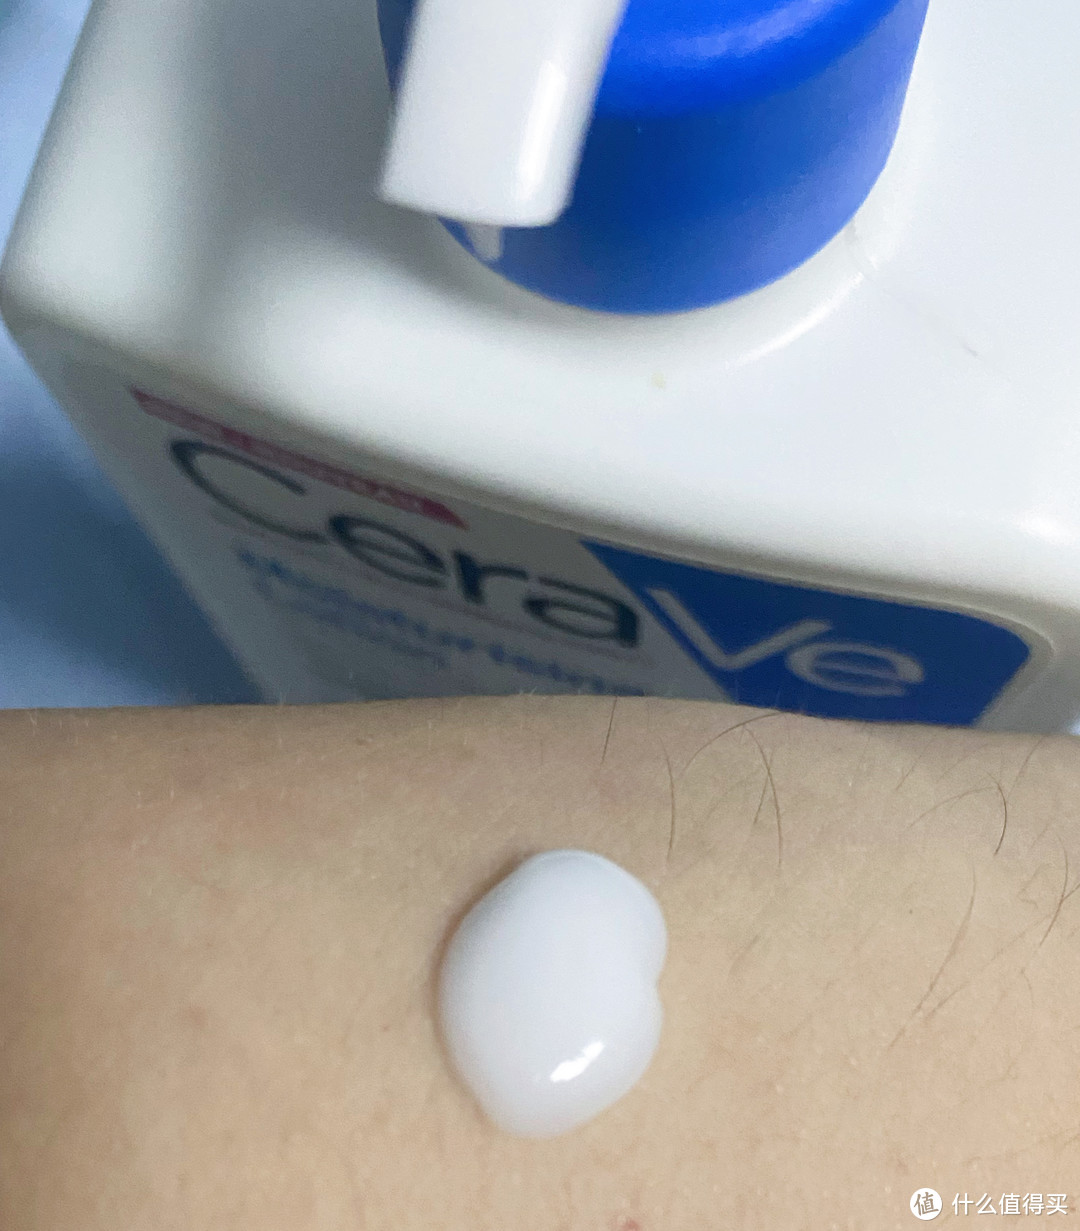 78元一瓶473ml的 CeraVe适乐肤修护保湿润肤乳，值得拥有